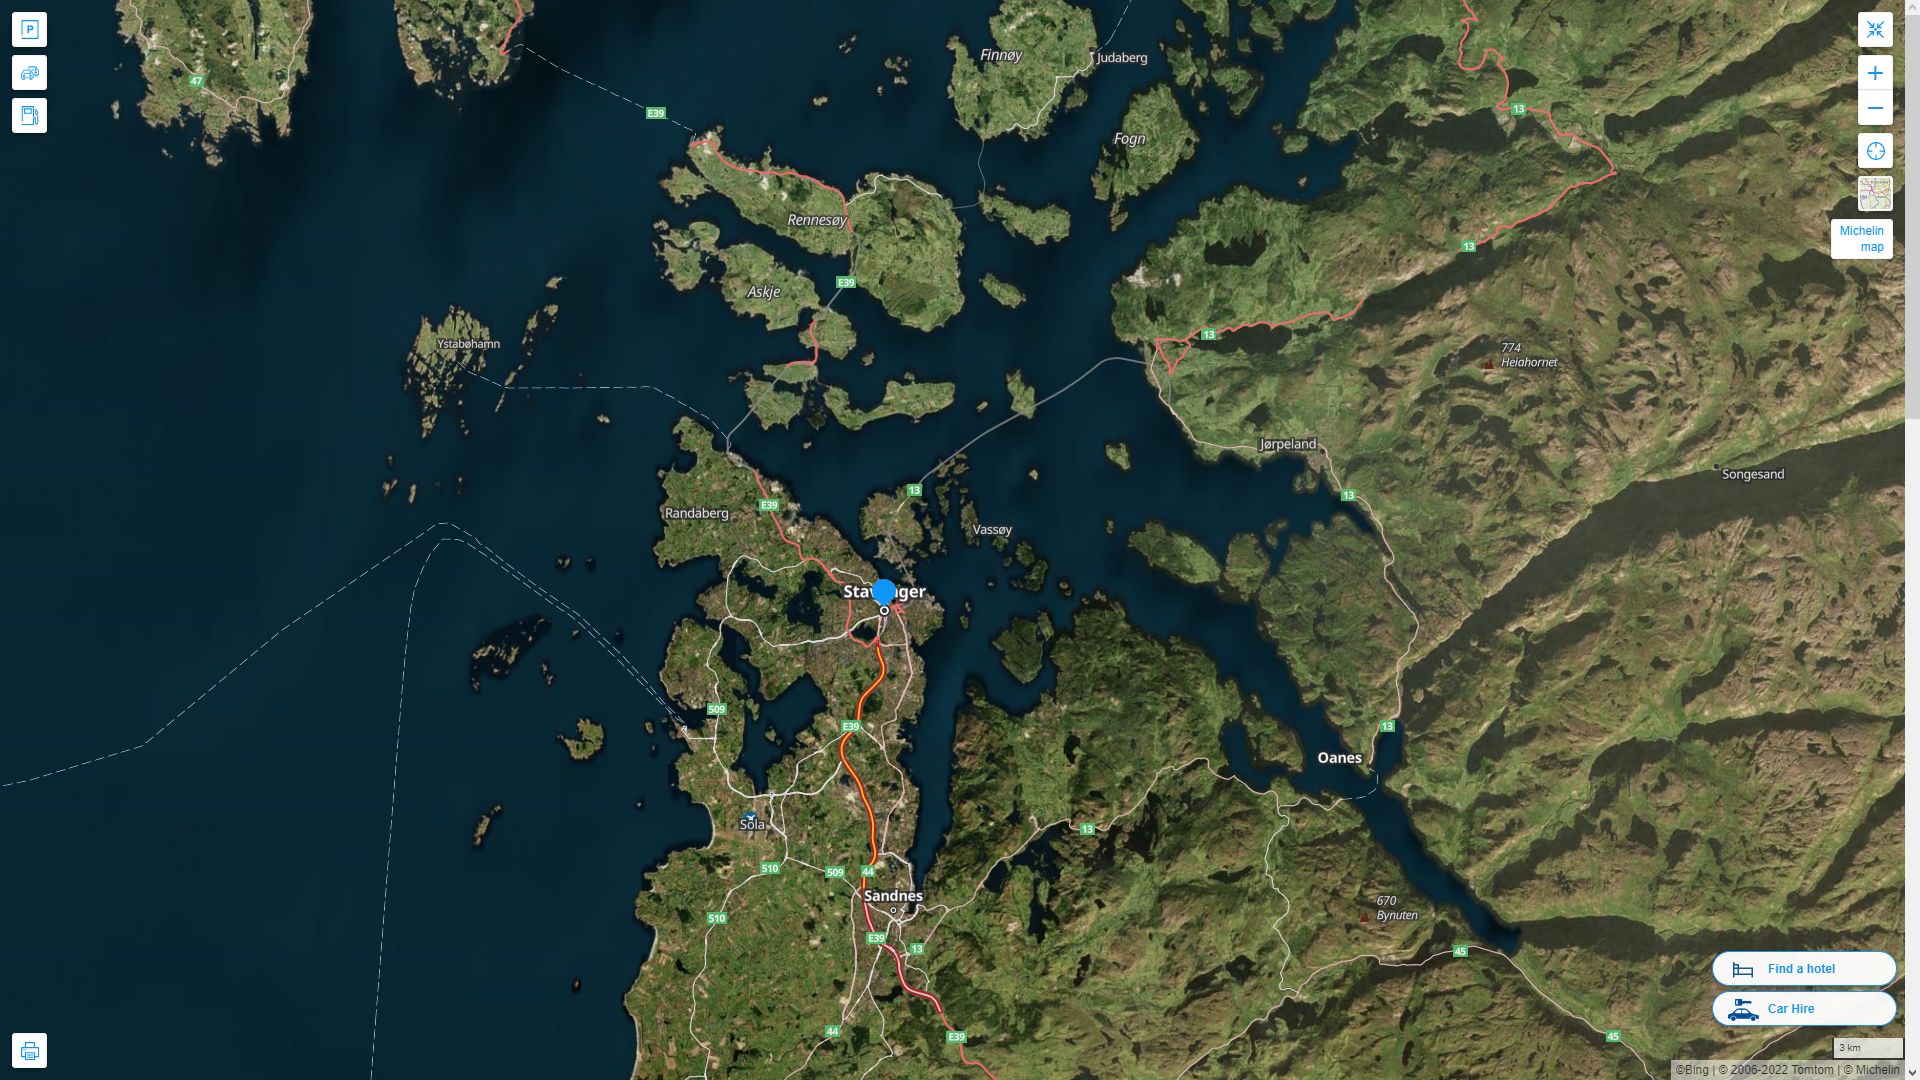 Stavanger Norvege Autoroute et carte routiere avec vue satellite